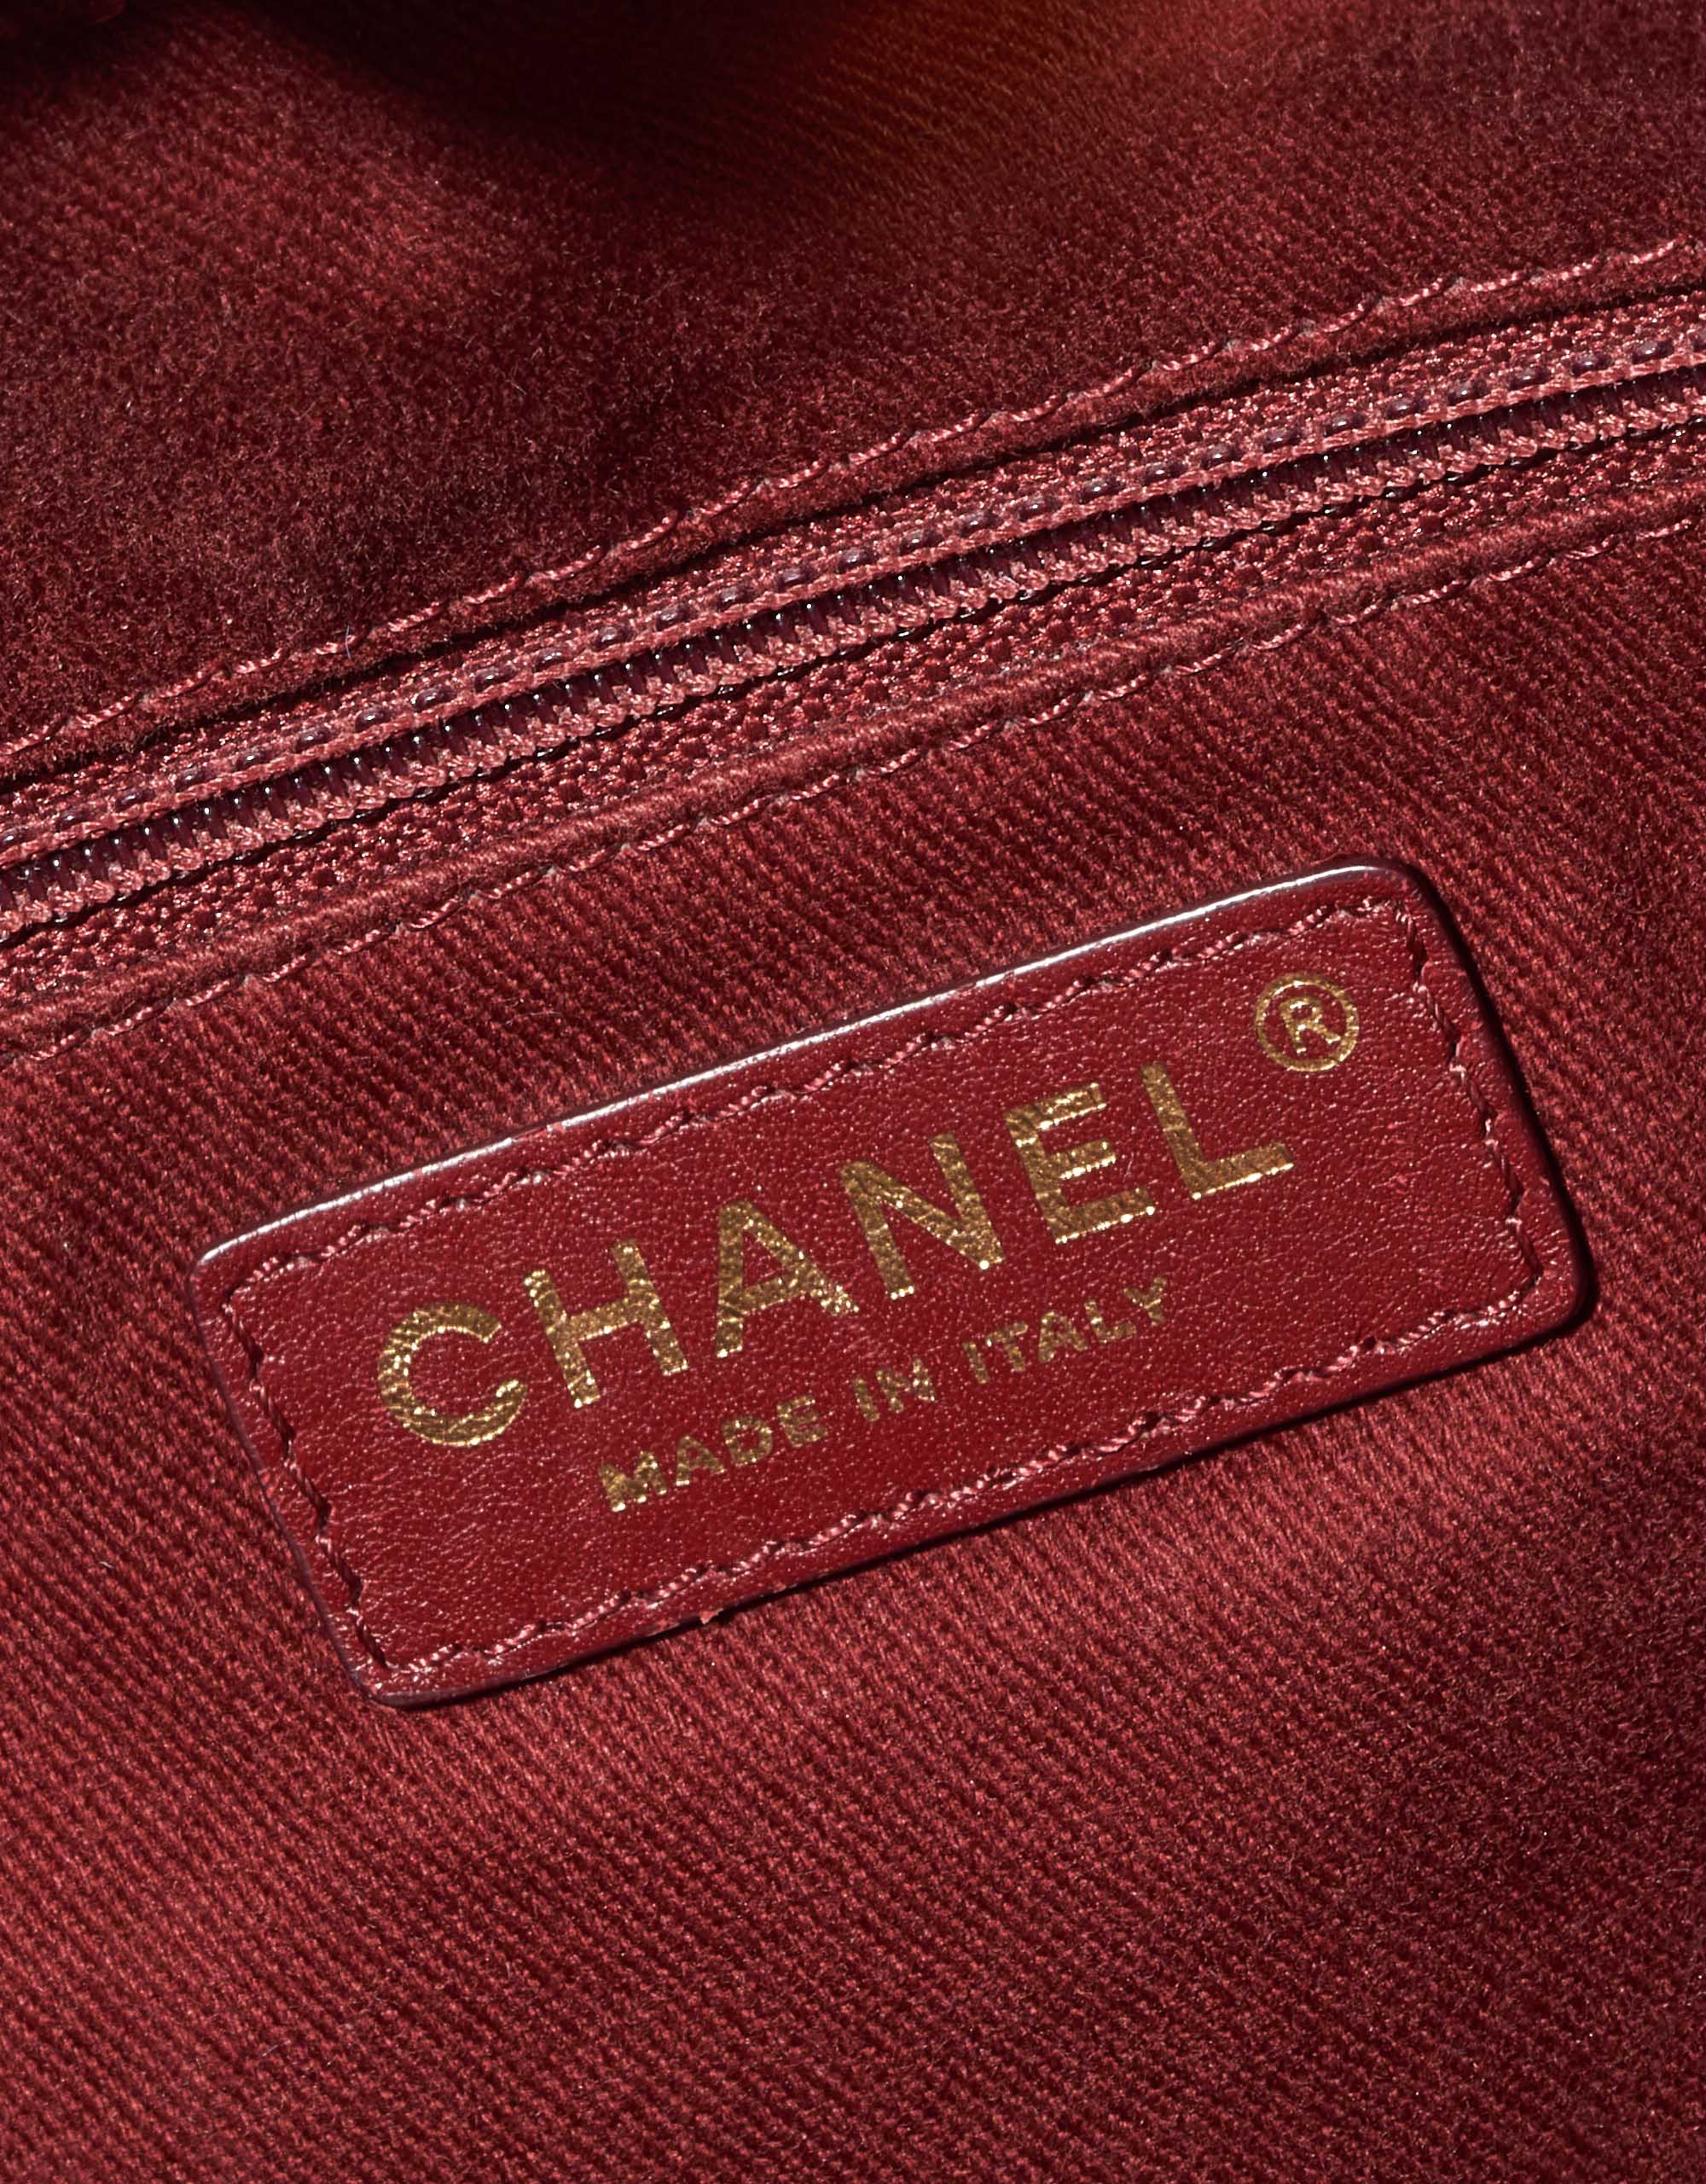 Chanel Timeless Backpack Denim Blue